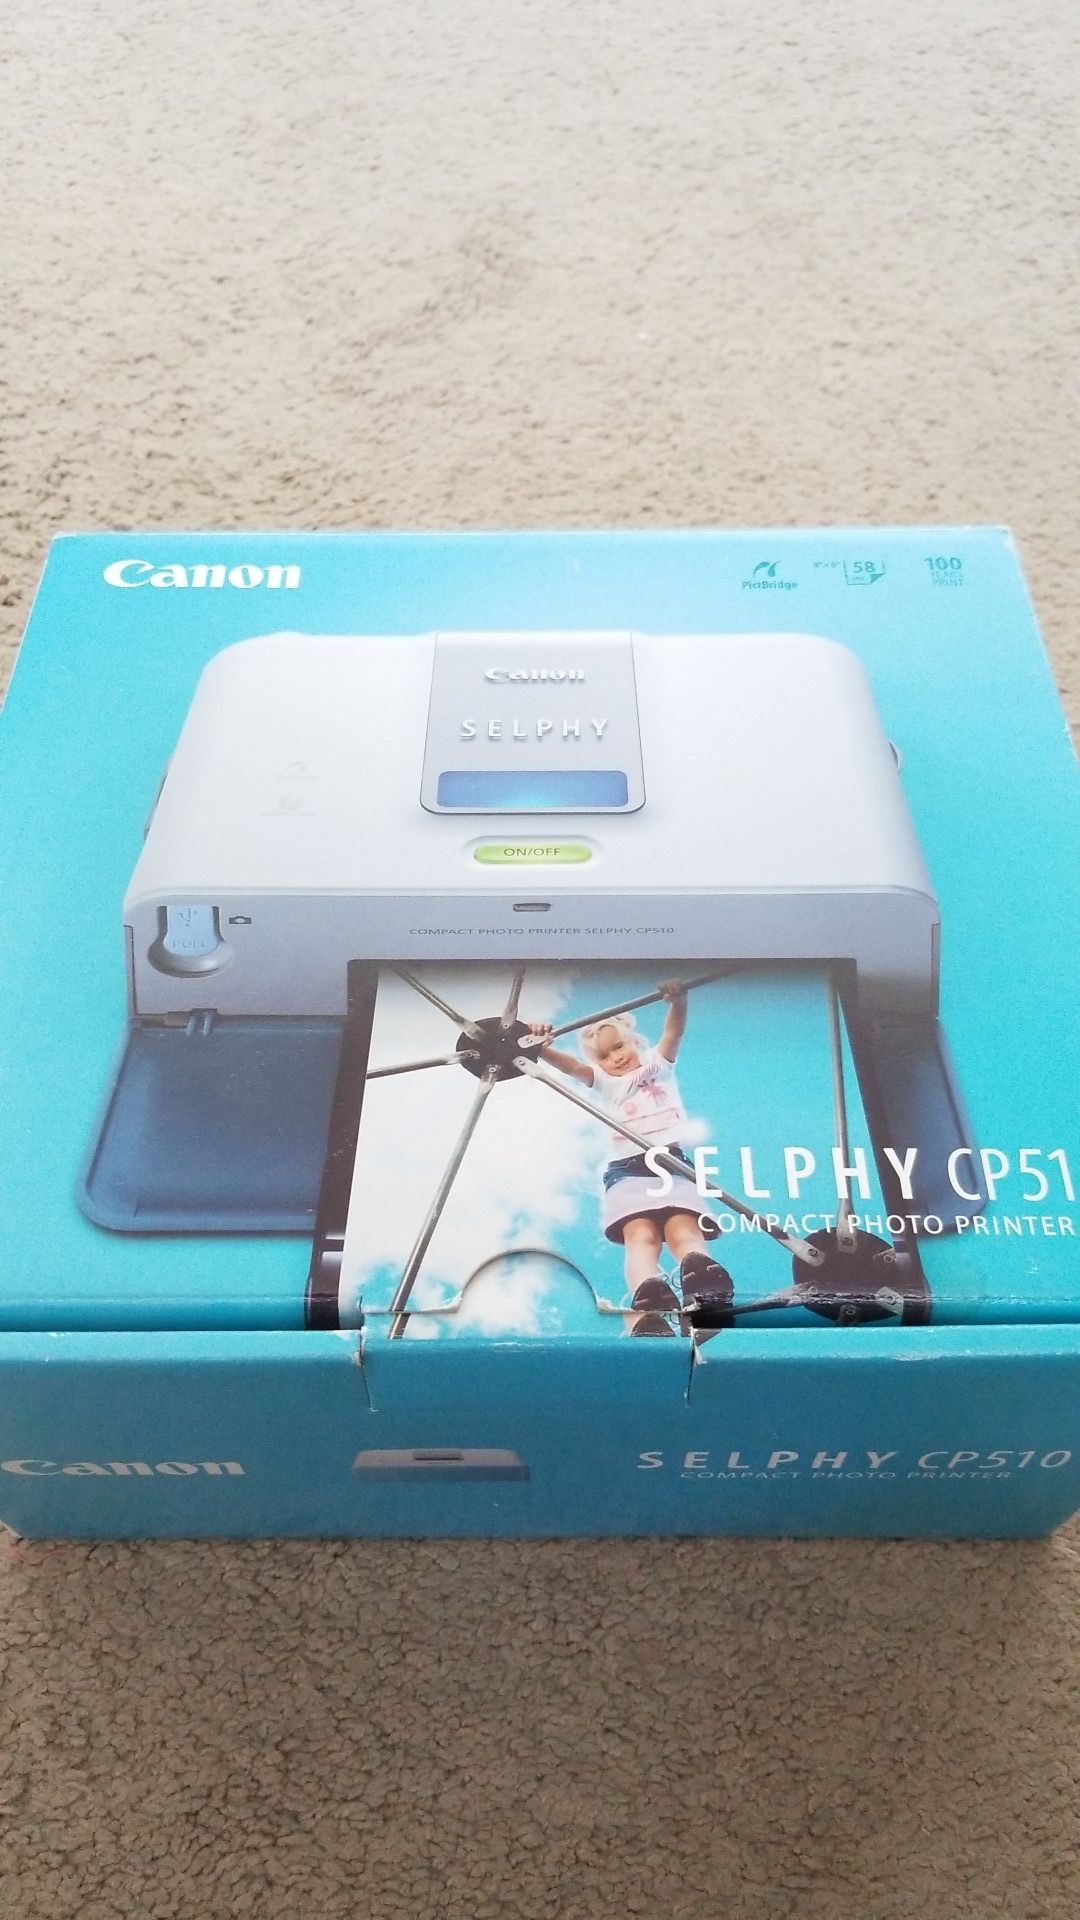 Canon Selphy CP510 compact photo printer